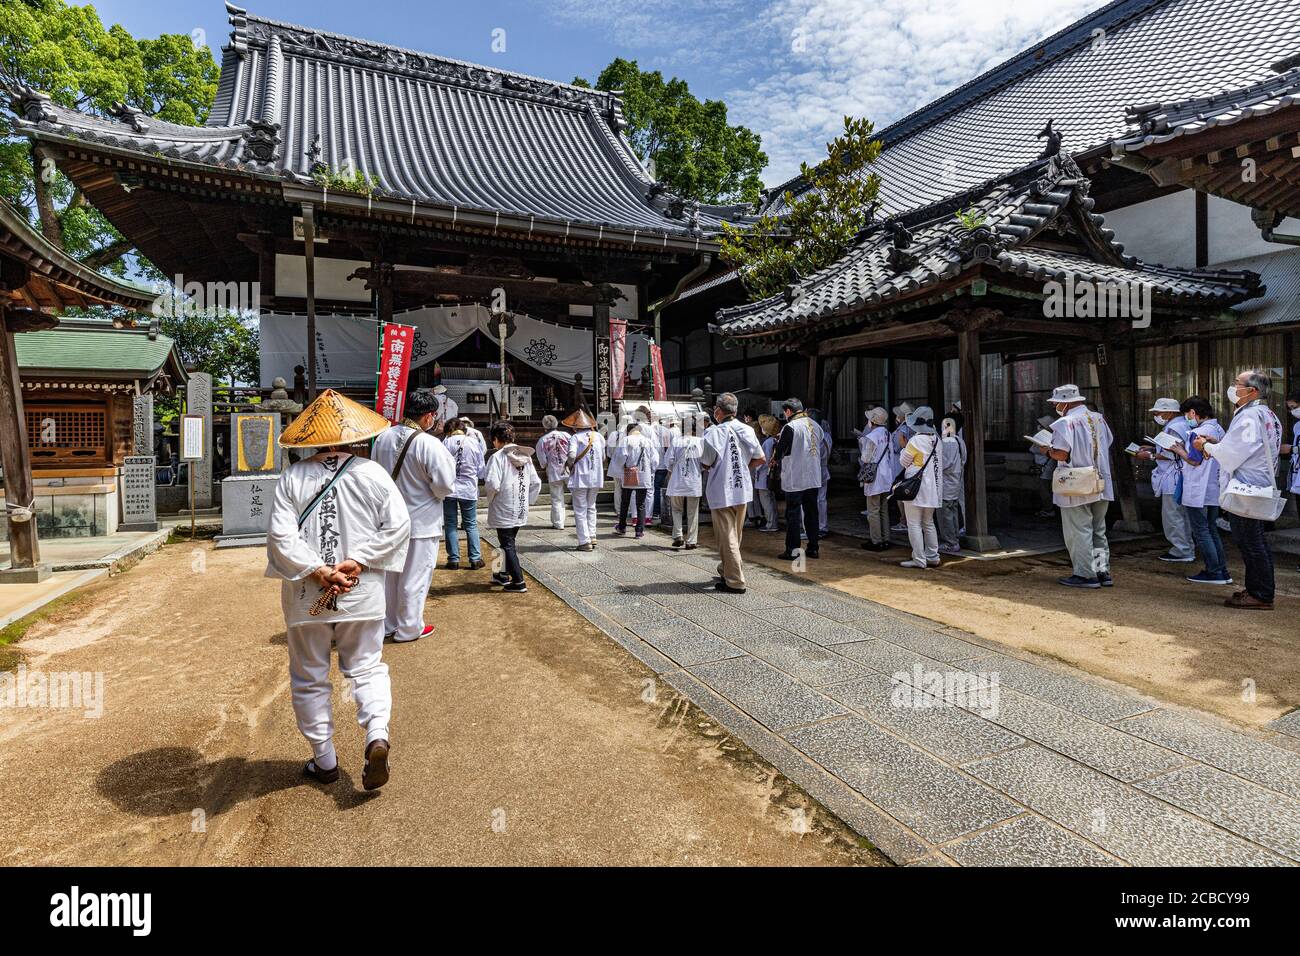 Enmyoji est le temple n° 53 du pèlerinage de Shikoku. Le temple a des sculptures en tuiles sur les toits de ses bâtiments avec roue de Dharma présente promine Banque D'Images